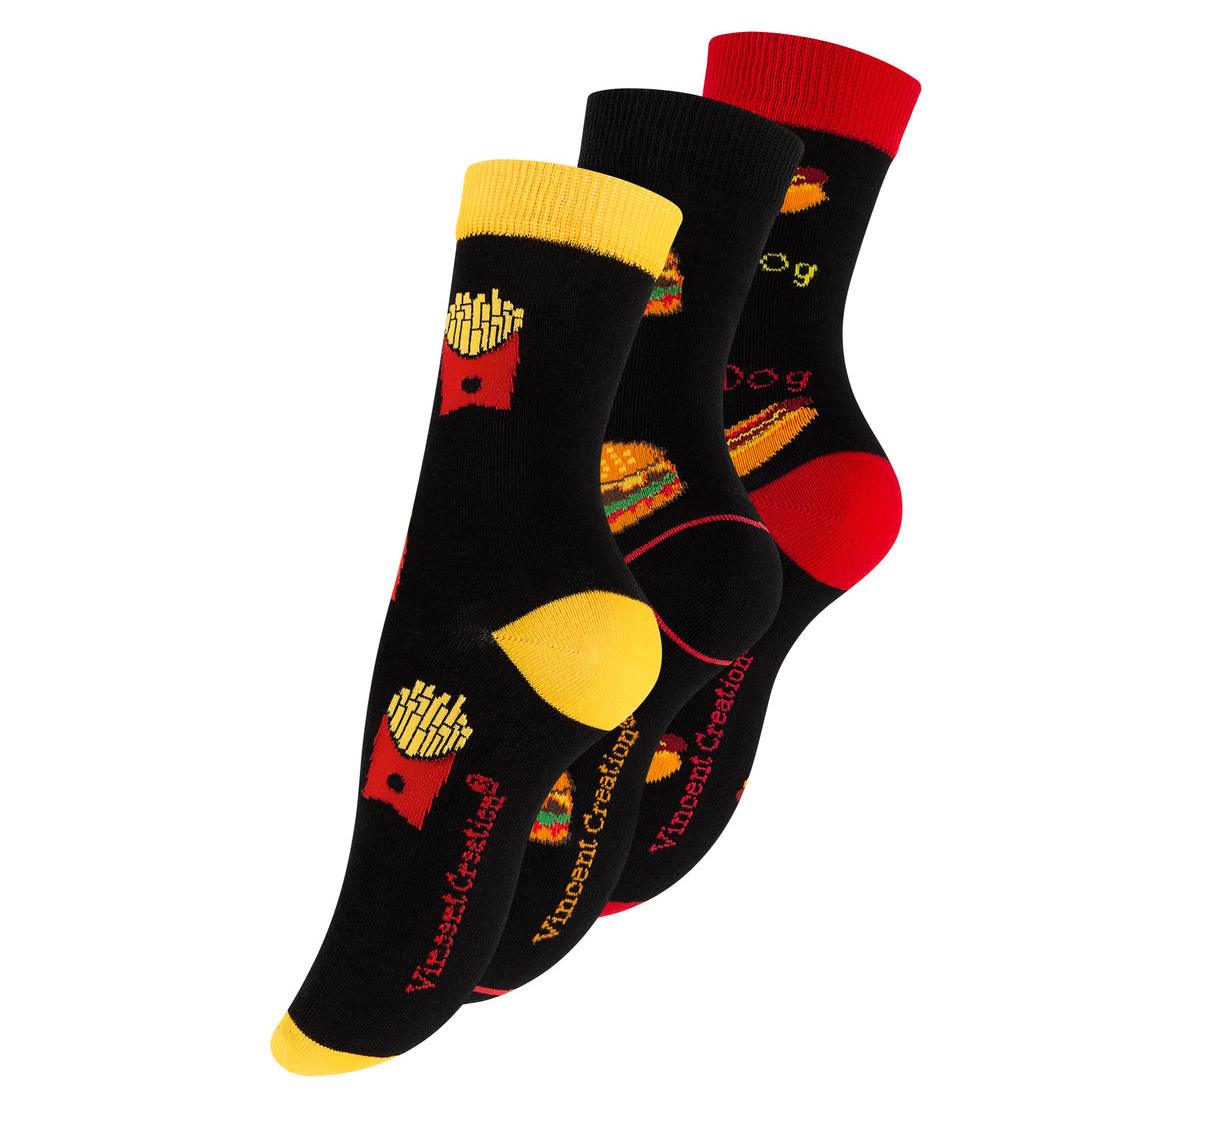 Bunte Fastfood-Socken, die mit appetitlichen Motiven wie Hotdogs, Pizza und Eis gestaltet sind – ein verspieltes und originelles Geschenk für alle, die gerne ihre Liebe zu Junk Food zeigen